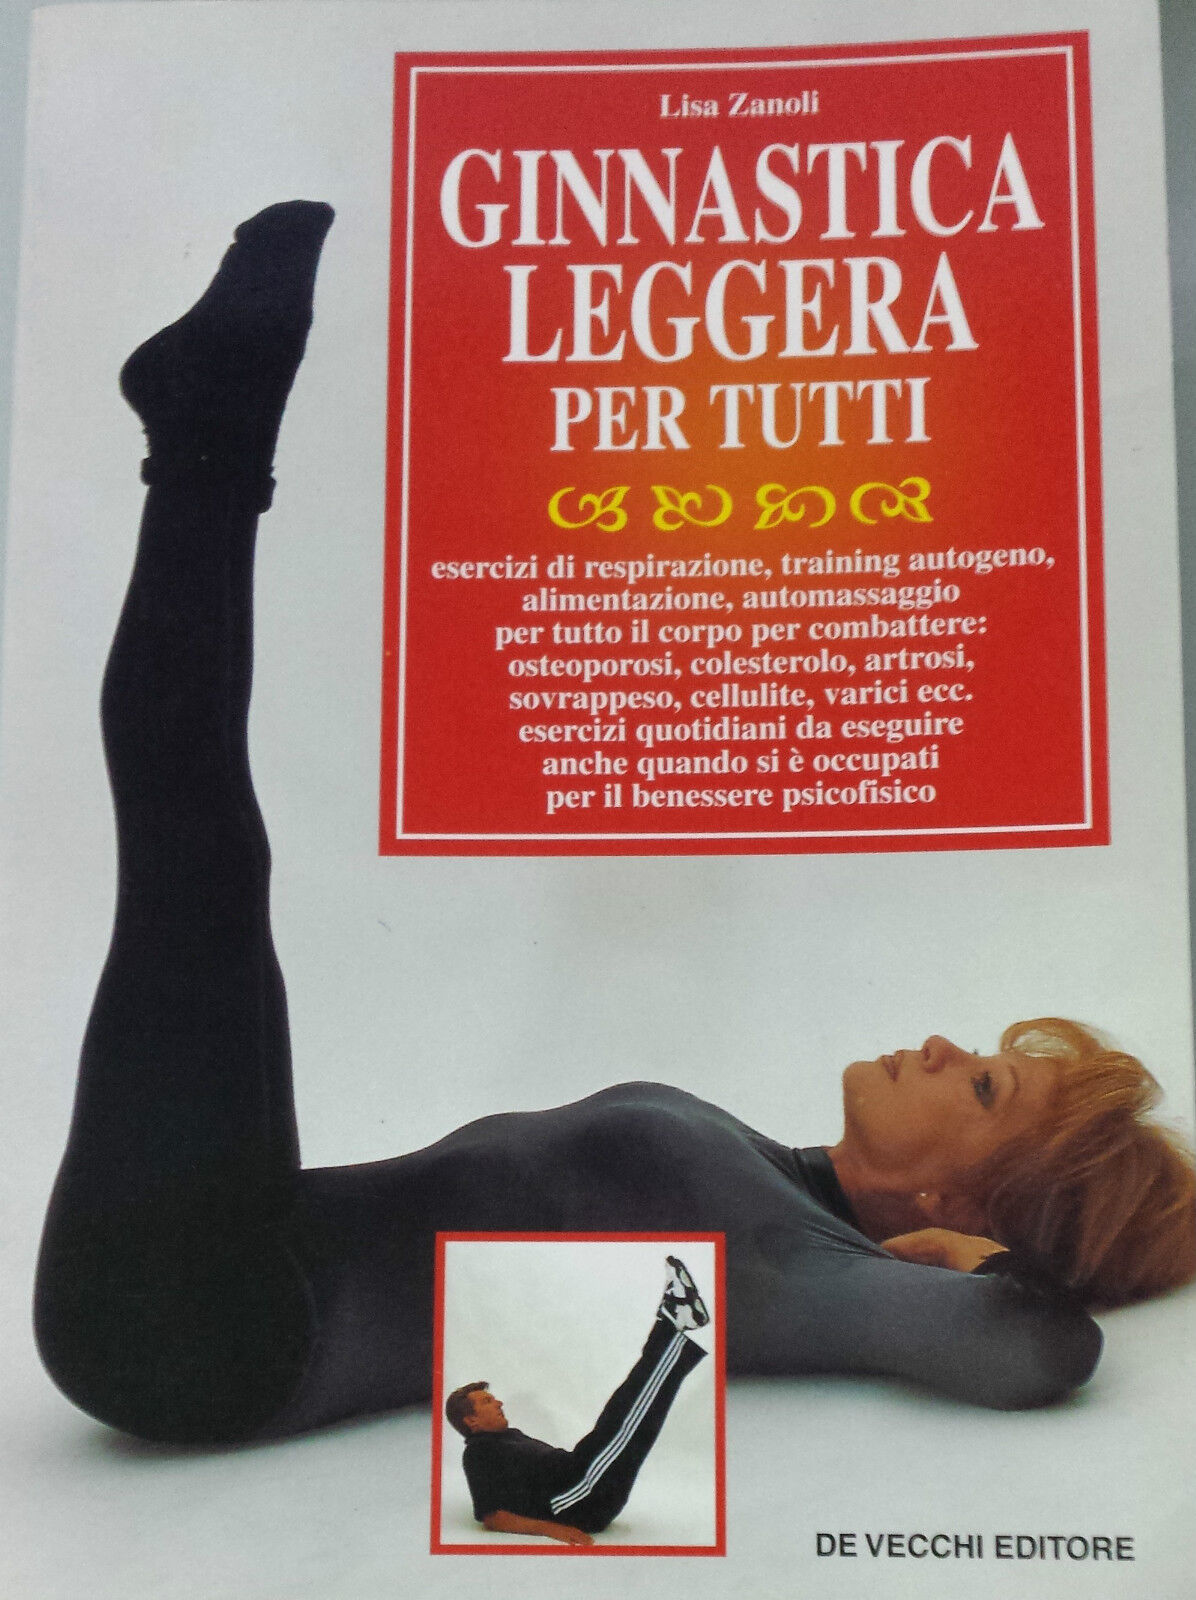 Ginnastica leggera per tutti - Lisa Zanoli - De Vecchi Editori - 1998 - G